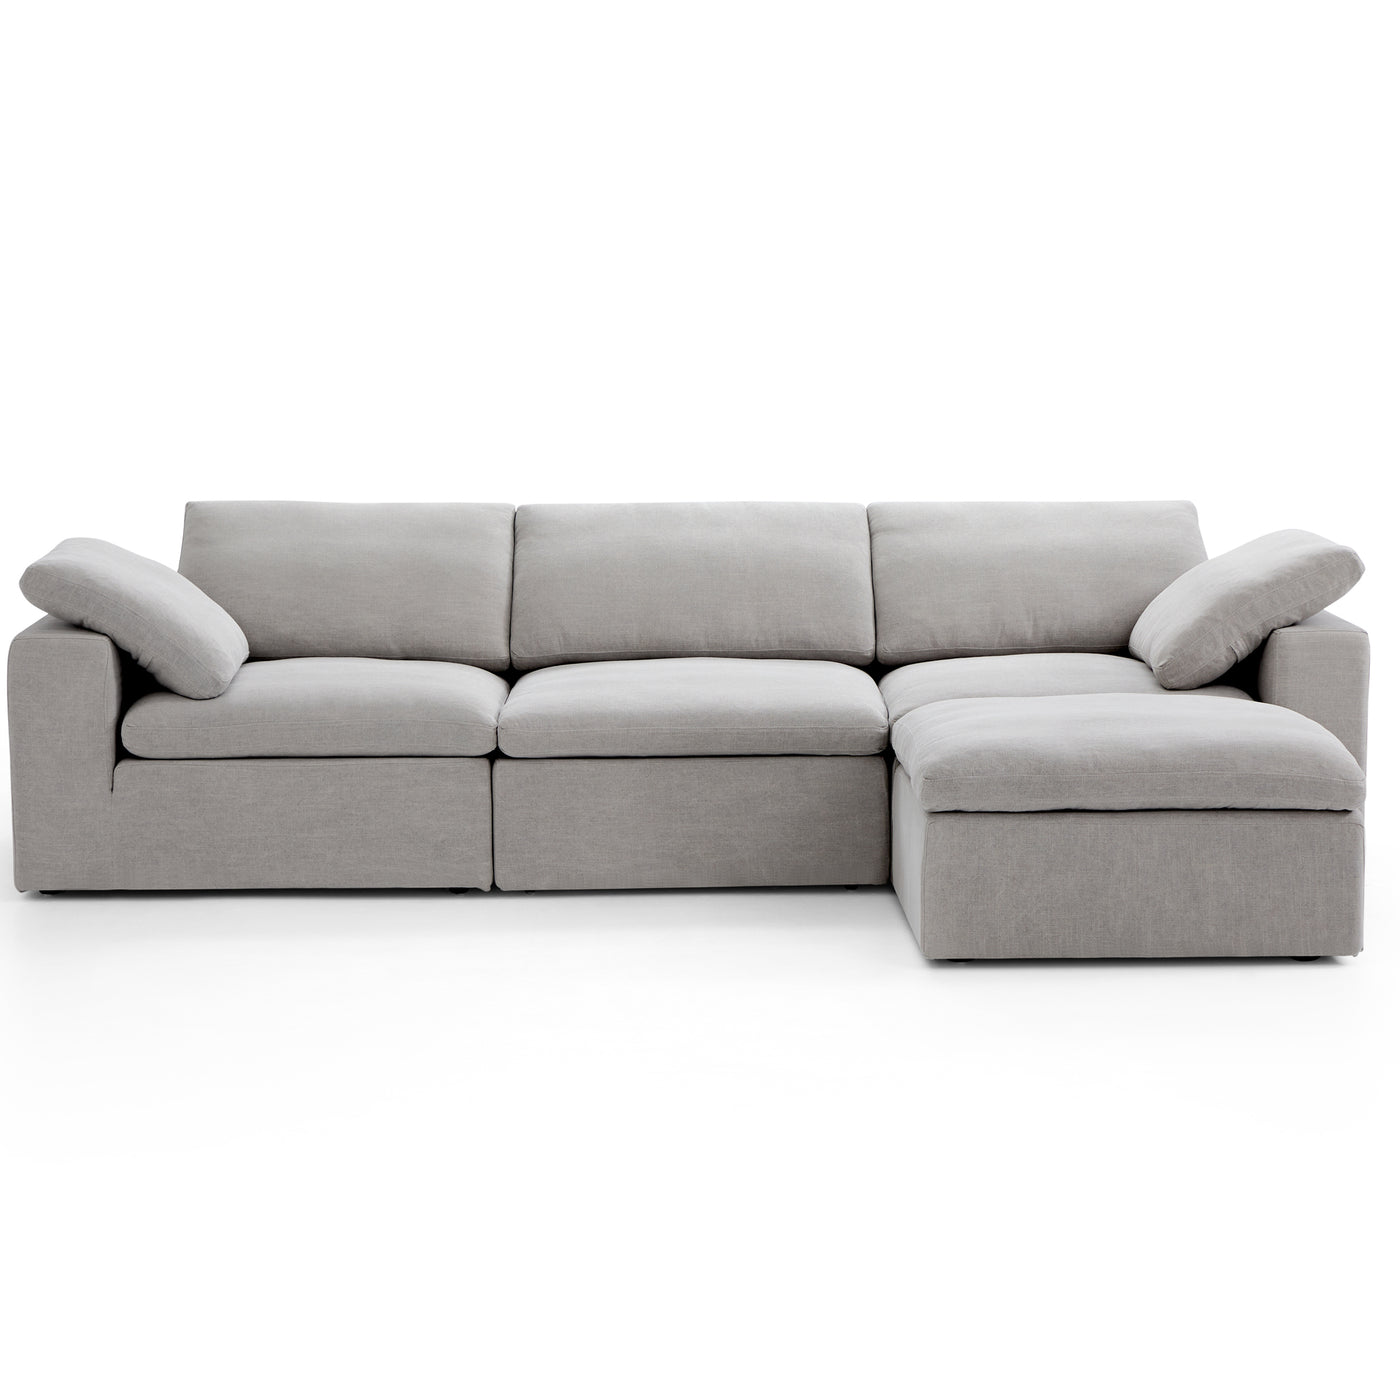 Tender Wabi Sabi Light Gray Sofa and Ottoman-Light Gray-128.0"